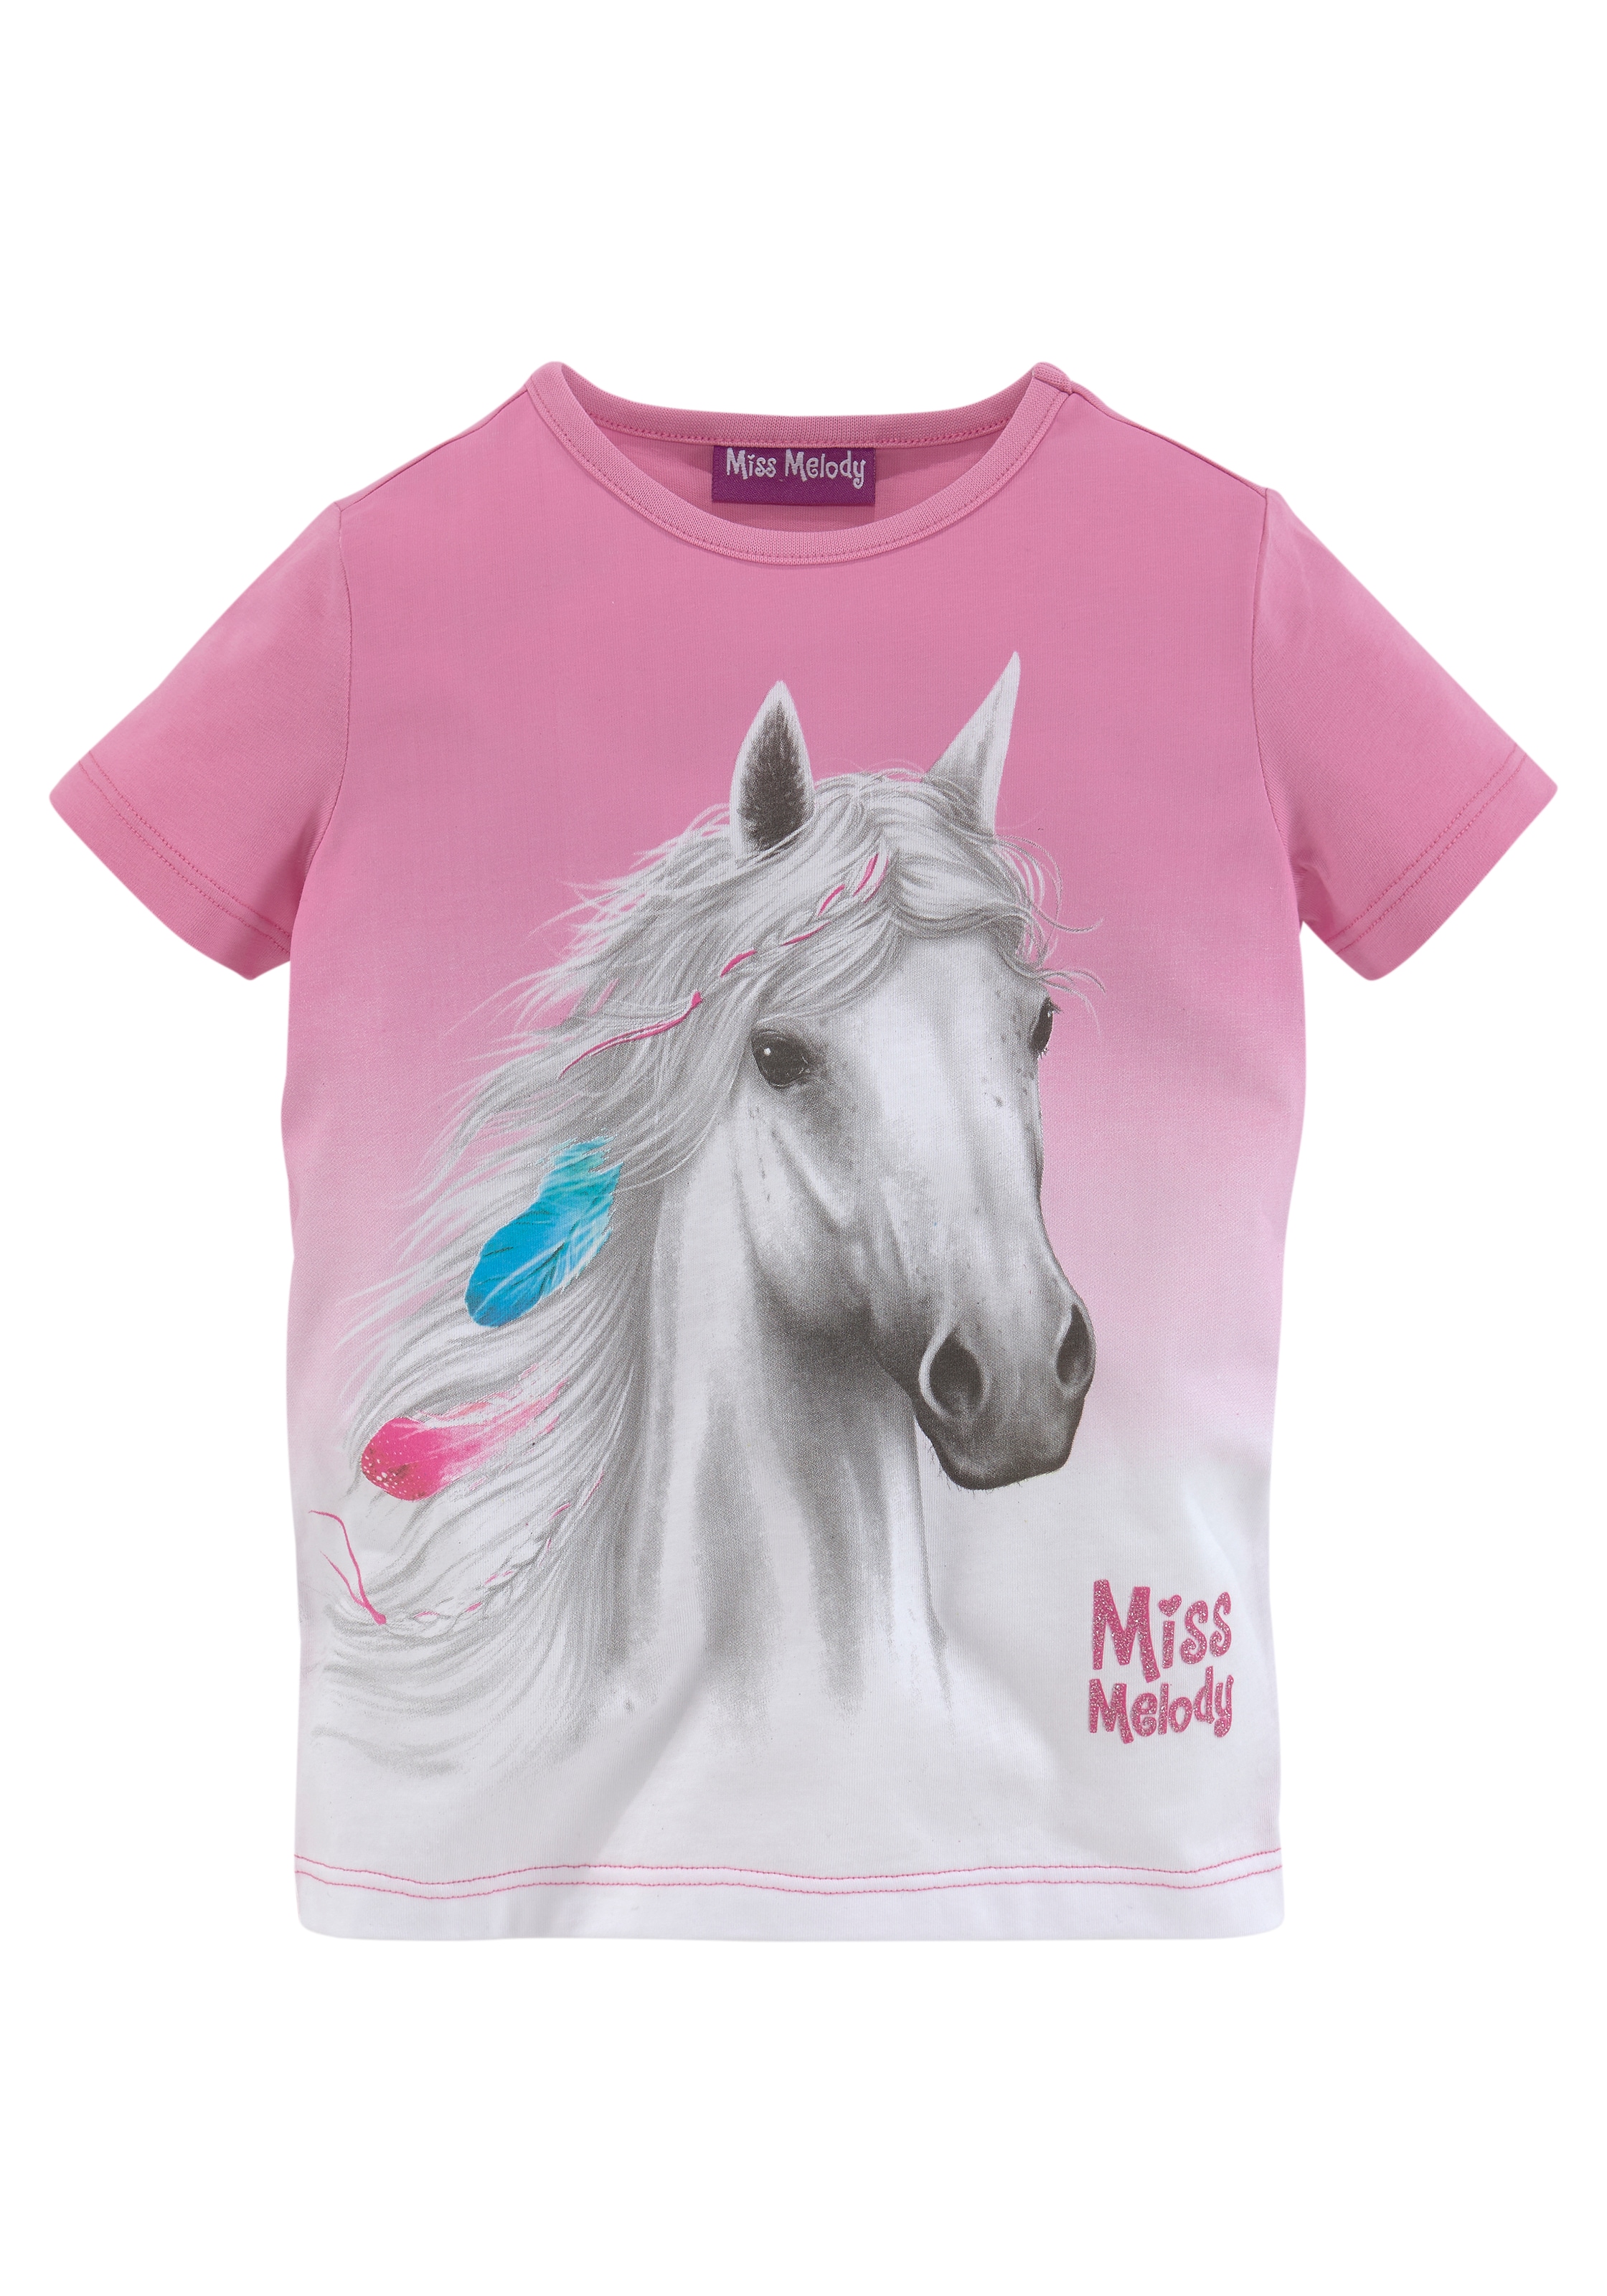 Trendige Miss mit Pferdemotiv T-Shirt, Melody versandkostenfrei shoppen schönem